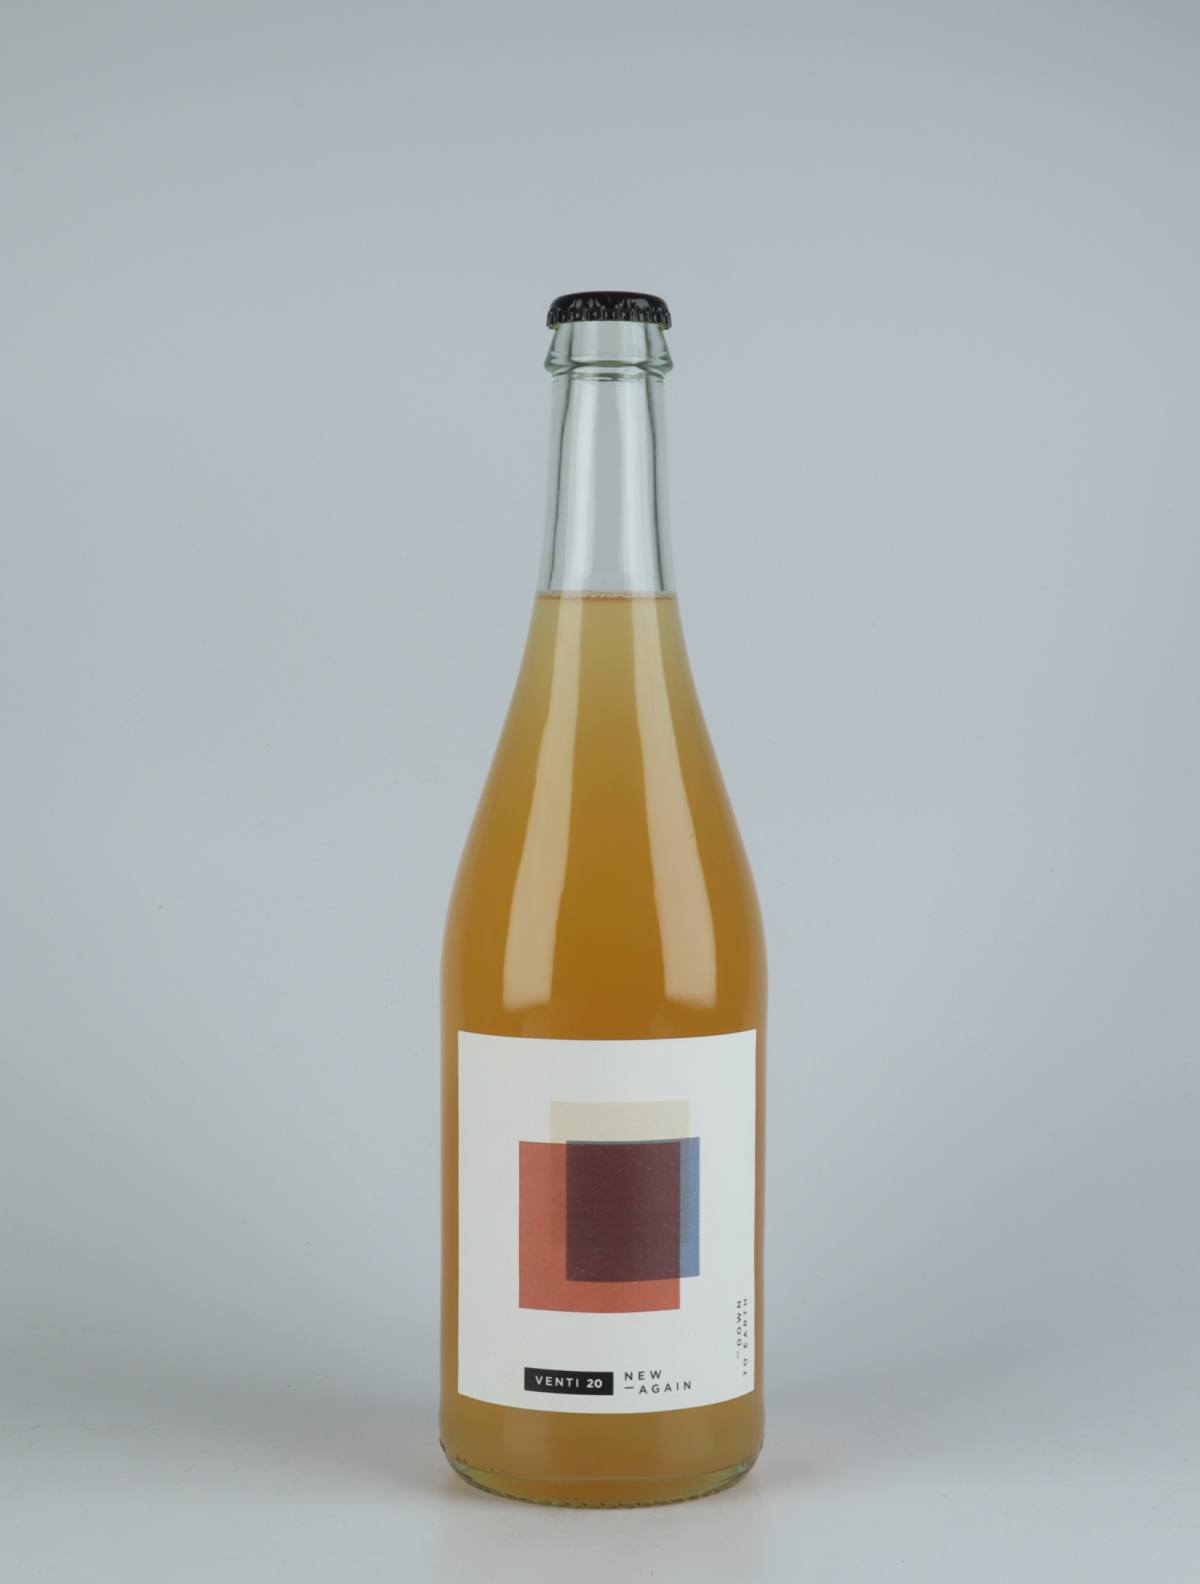 En flaske 2020 New Again Orange vin fra do.t.e Vini, Toscana i Italien